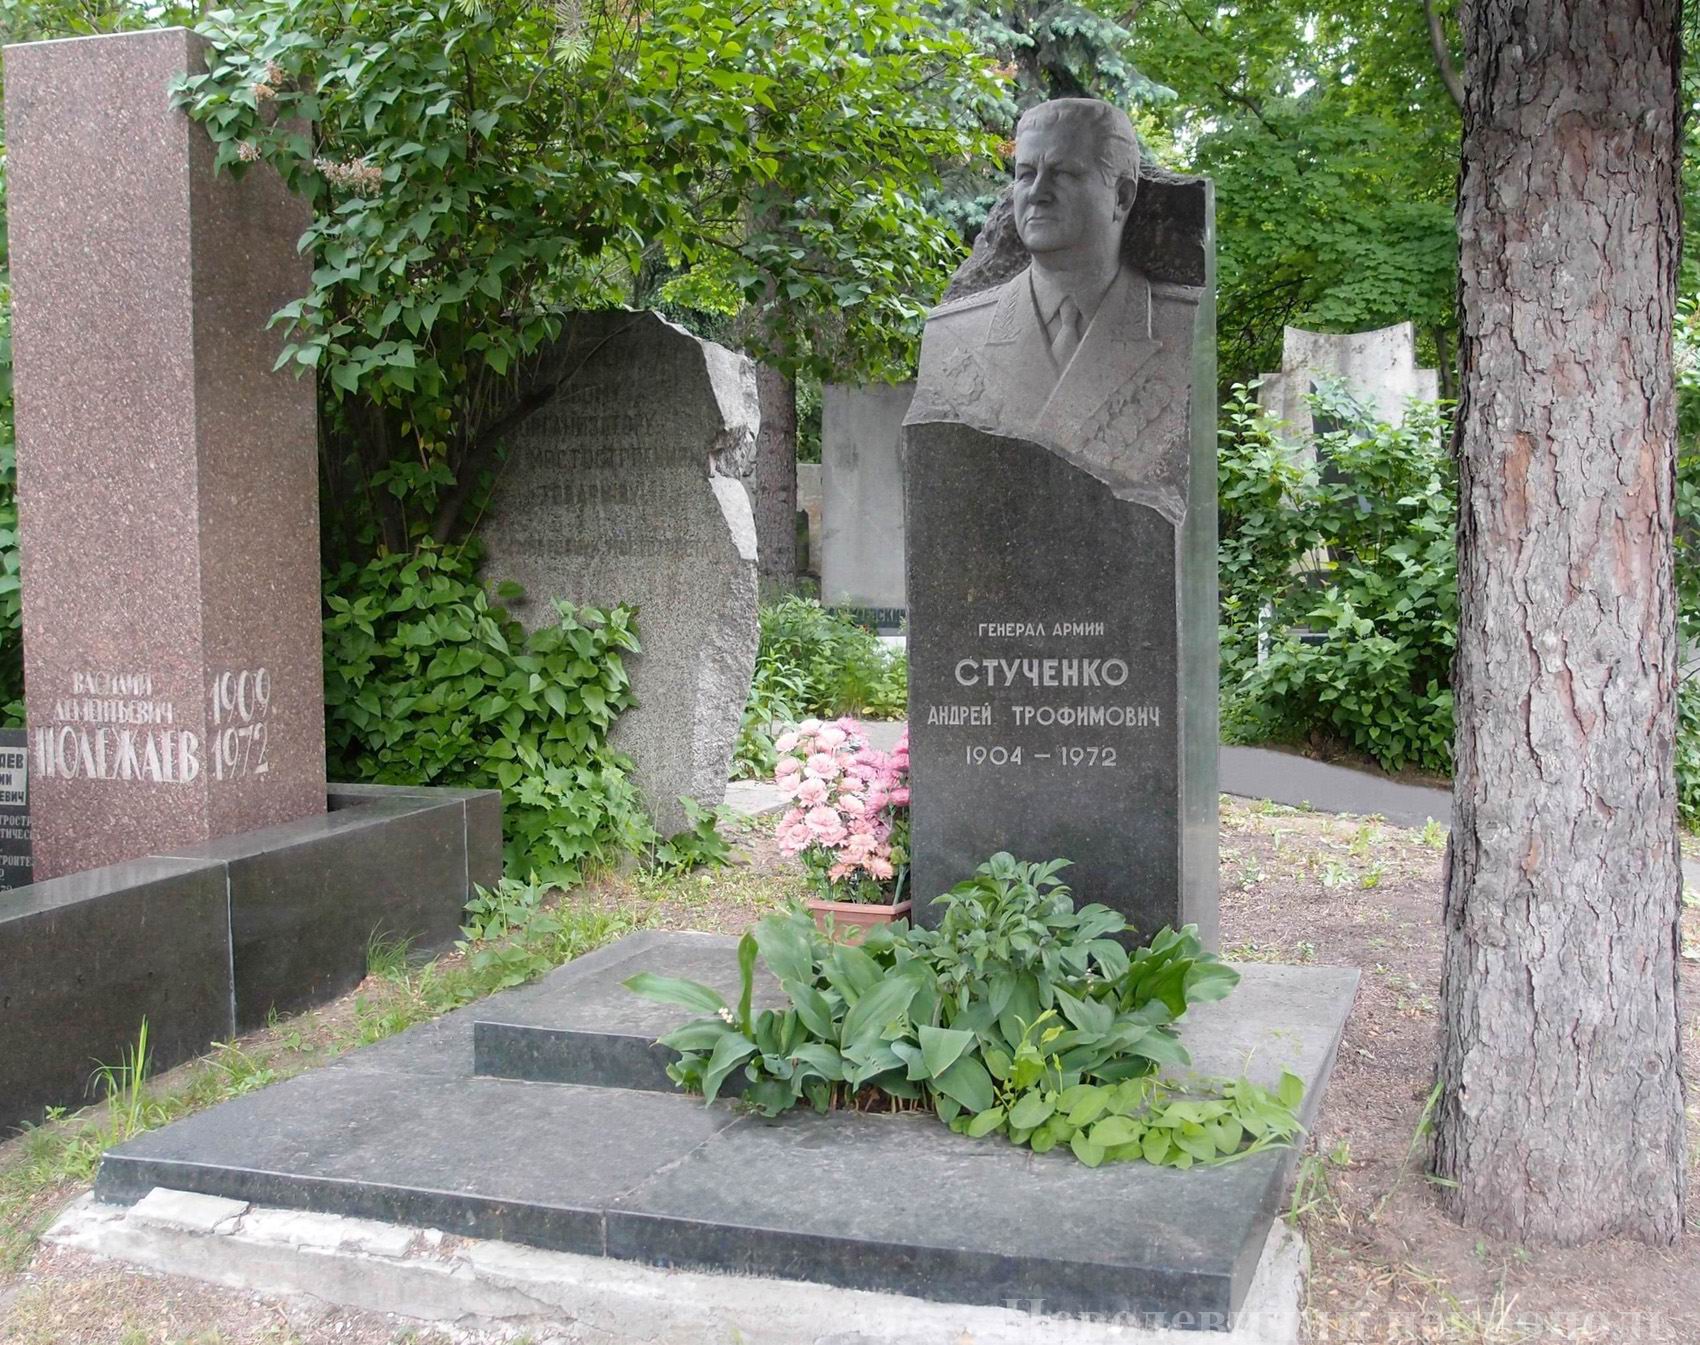 Памятник на могиле Стученко А.Т. (1904-1972), на Новодевичьем кладбище (6-40-10). Нажмите левую кнопку мыши, чтобы увидеть фрагмент памятника.